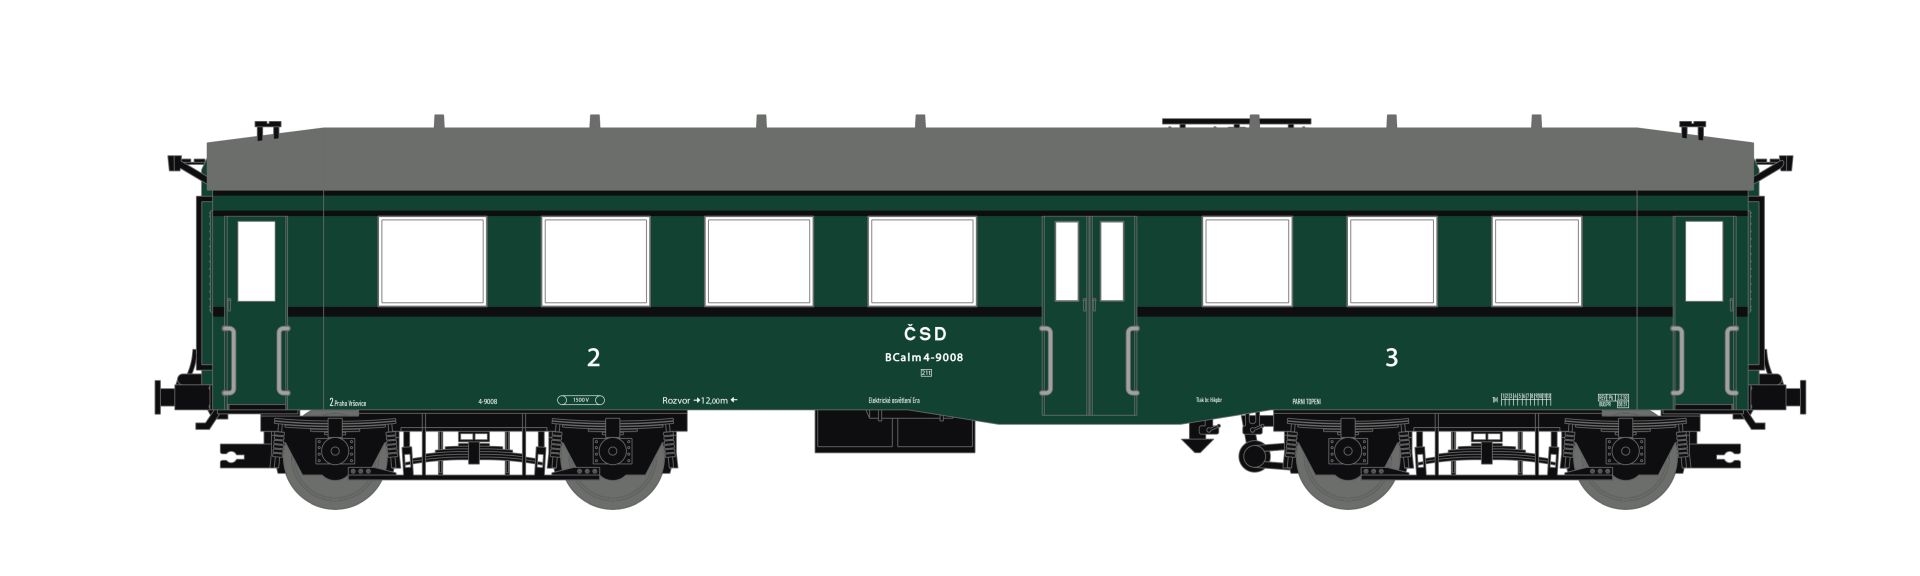 Saxonia 120053 - Personenwagen Bauart 'Altenberg', ex. BC4i, CSD, Ep.III